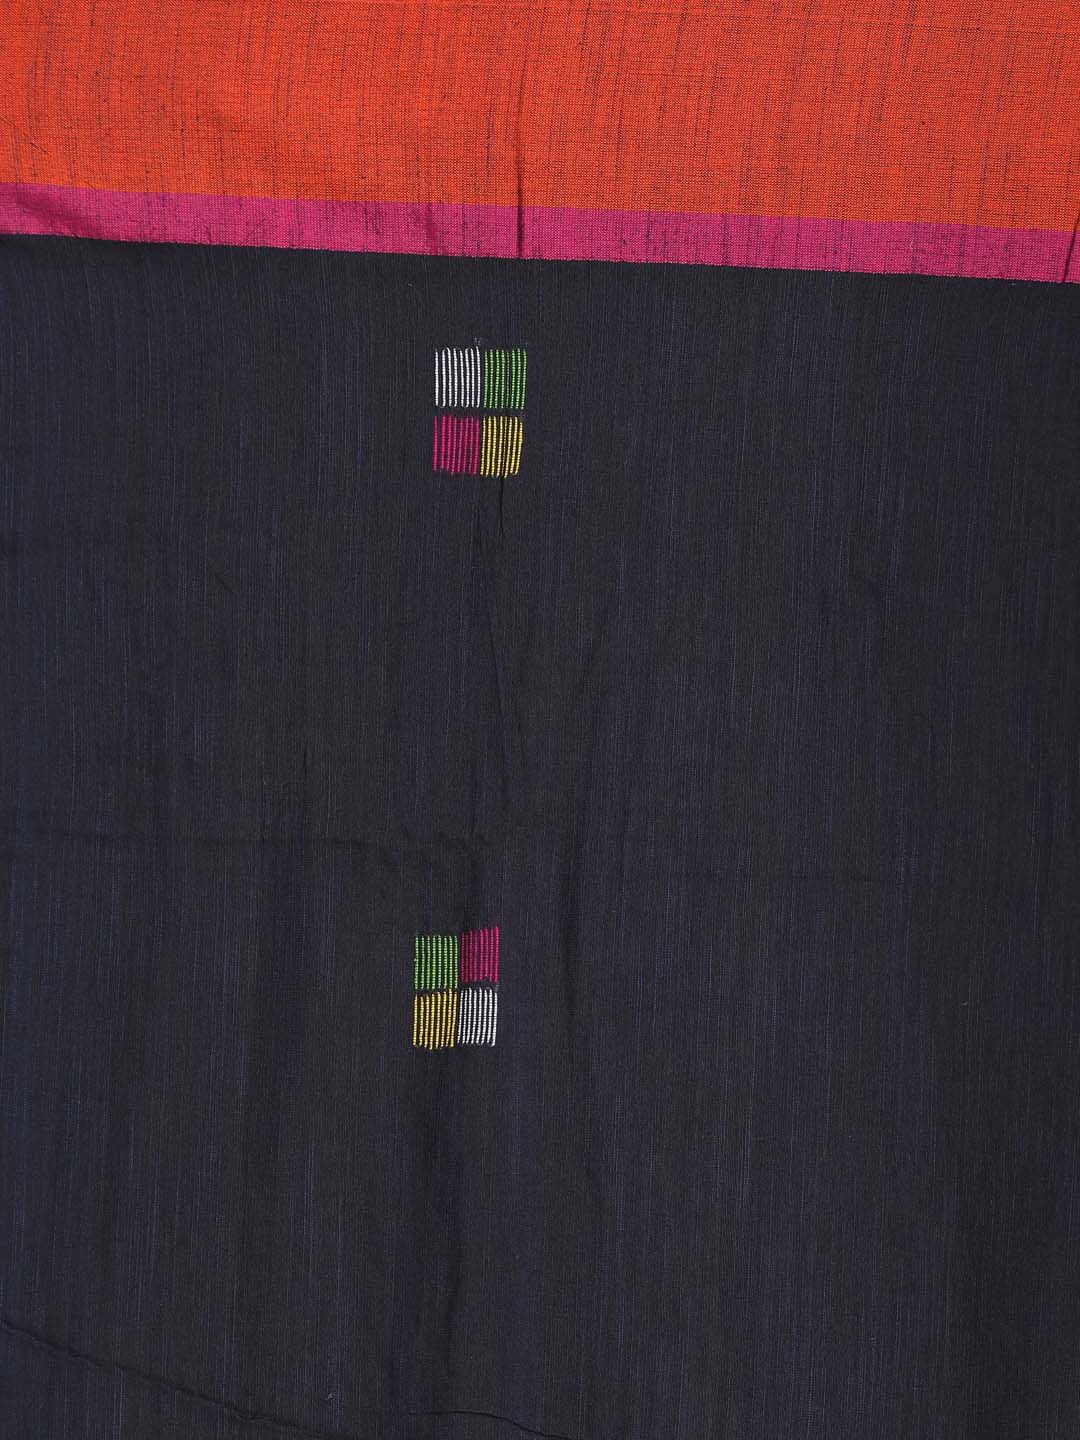 Indethnic Black Bengal Handloom Pure Cotton Saree Work Saree - Saree Detail View